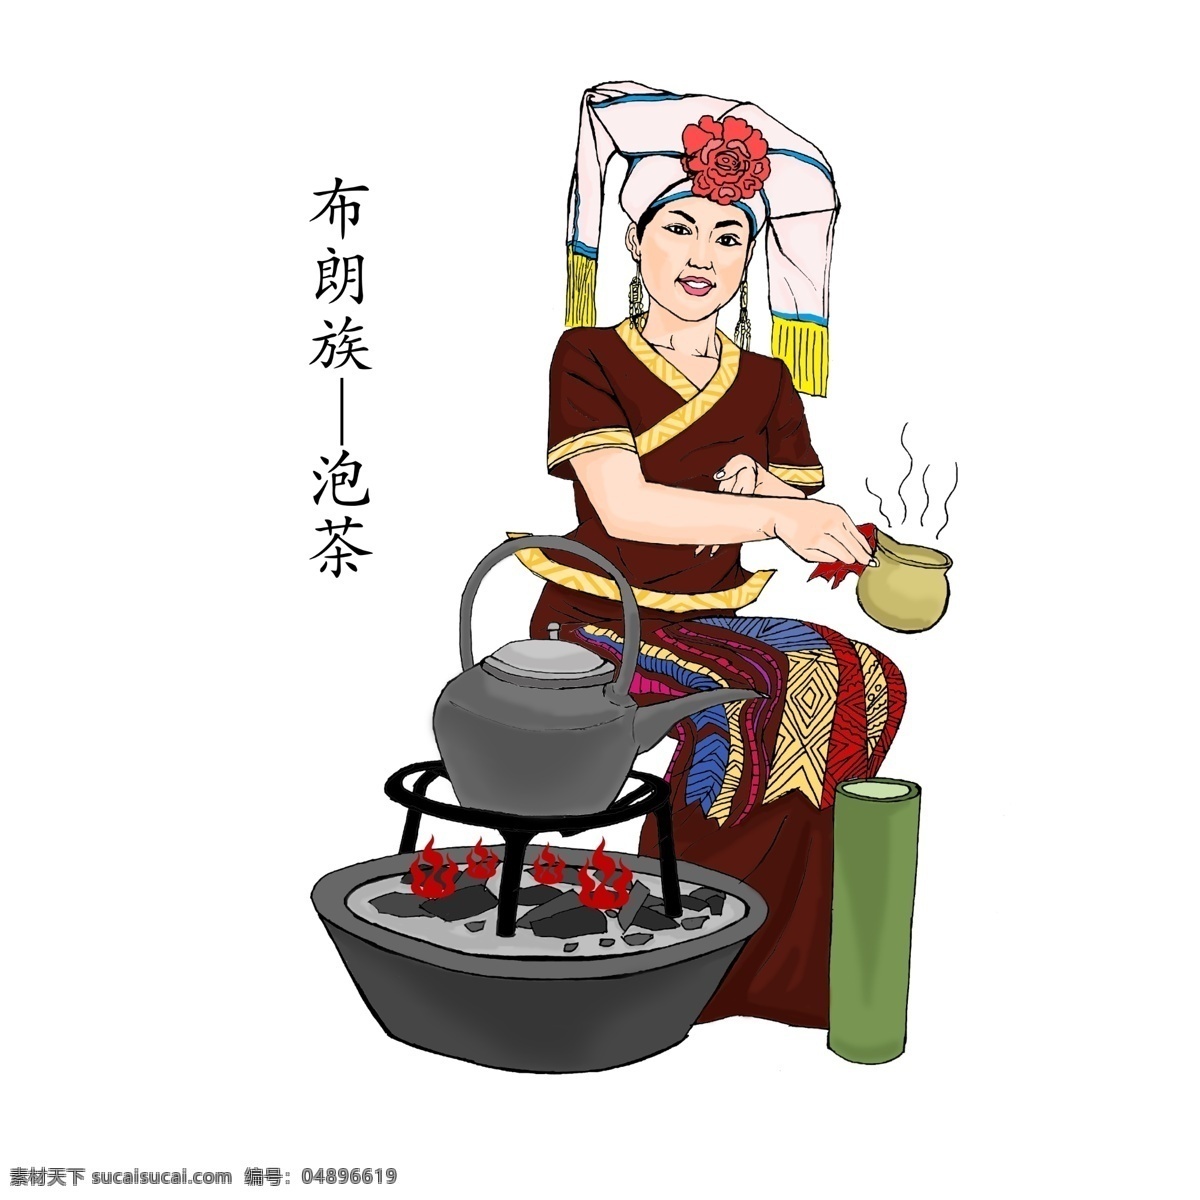 布朗族 泡茶 少女 民族元素 民族插画 茶文化 民族风 动漫动画 动漫人物